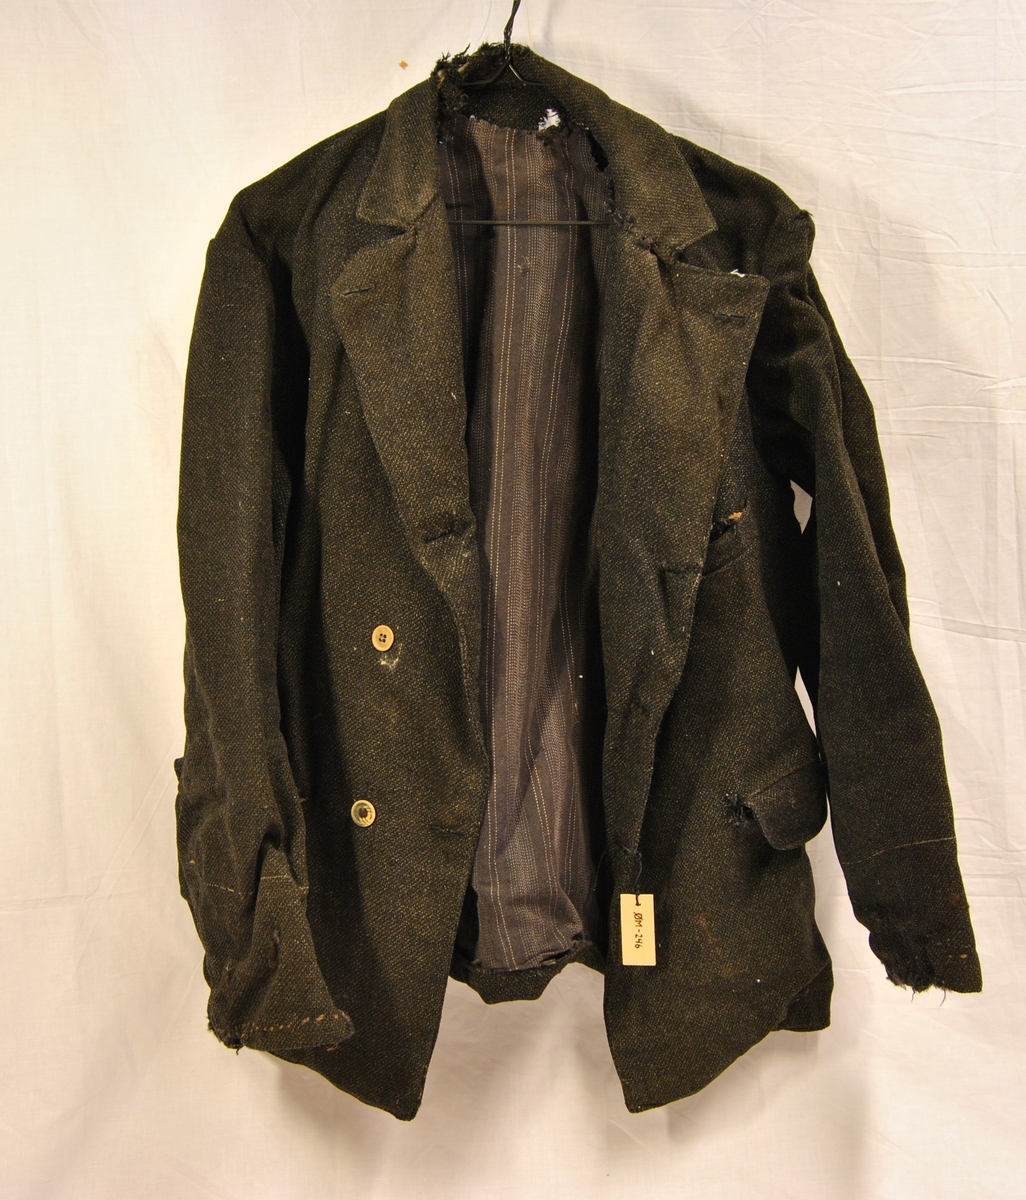 Form: blazerformet jakke med knapper i front og lommer i sidene. Meget slitt og lappet flere ganger. En del hull (møll/mus?)